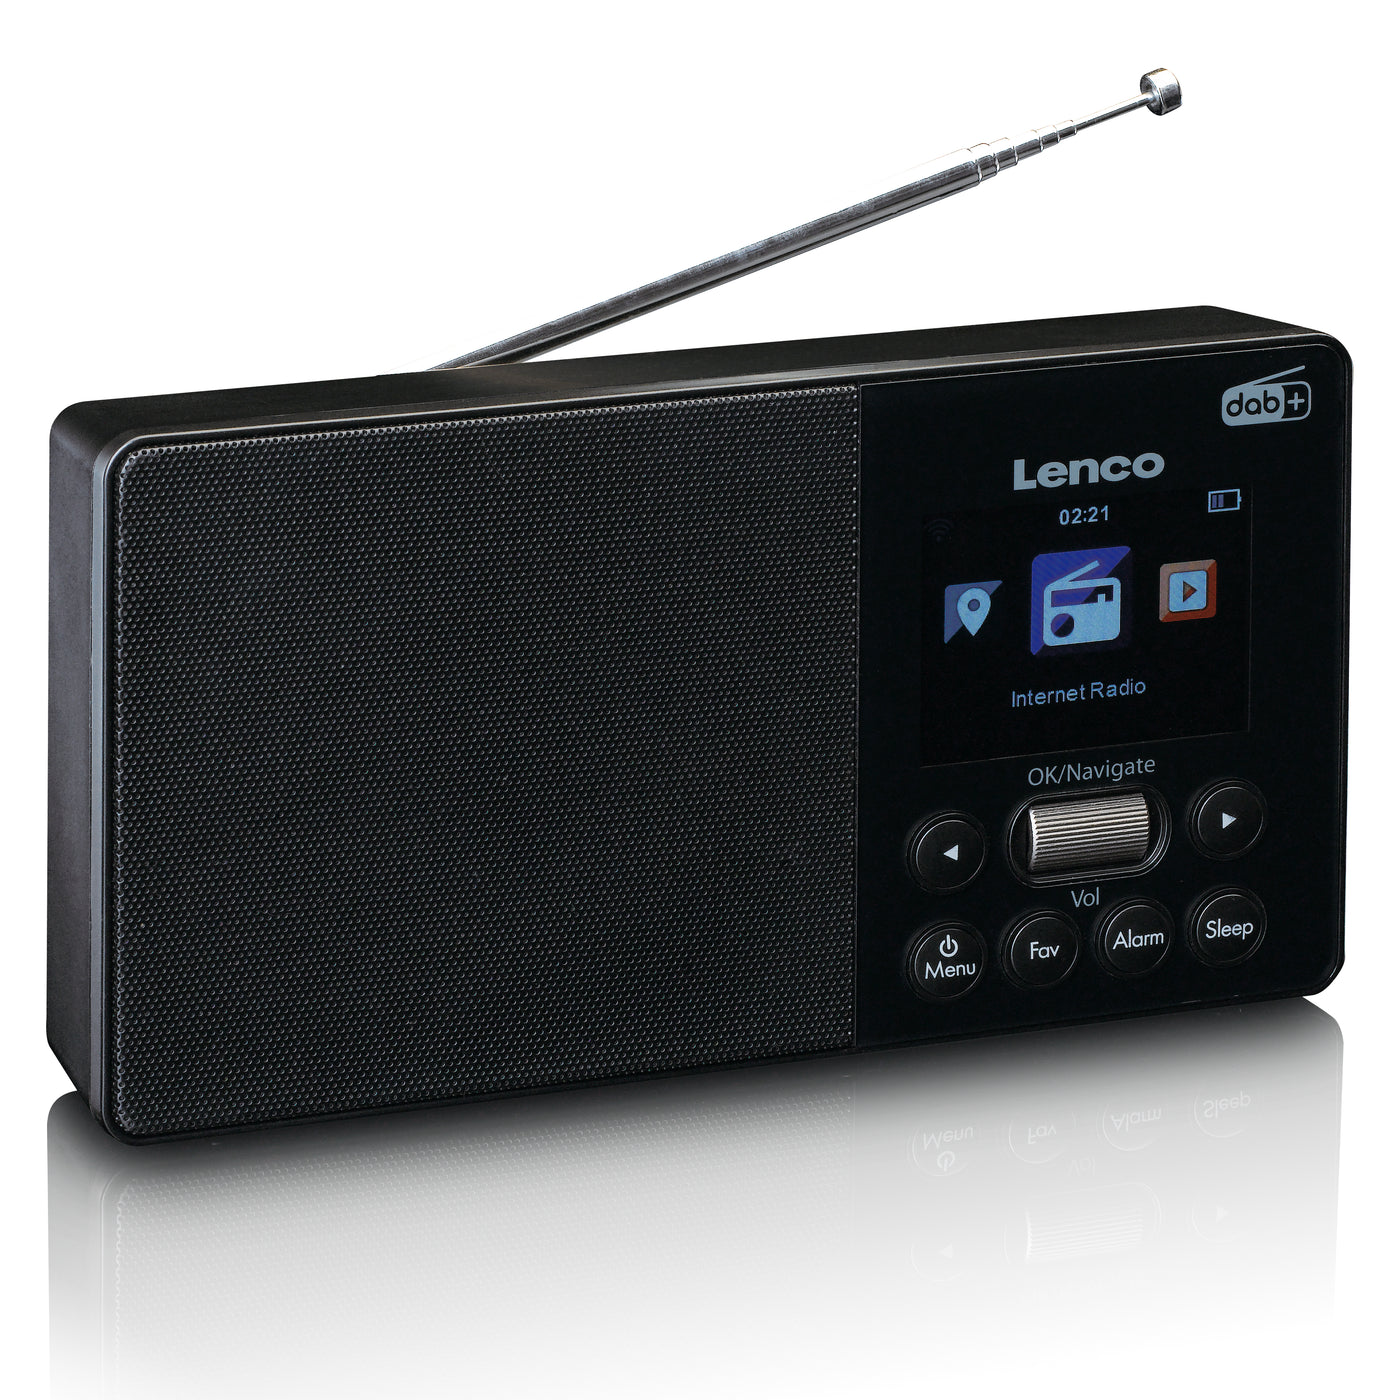 Versterker doel Uitgaand Lenco PIR-510BK kaufen? | Jetzt im offiziellen Lenco Webshop – Lenco.de -  Offizieller Webshop